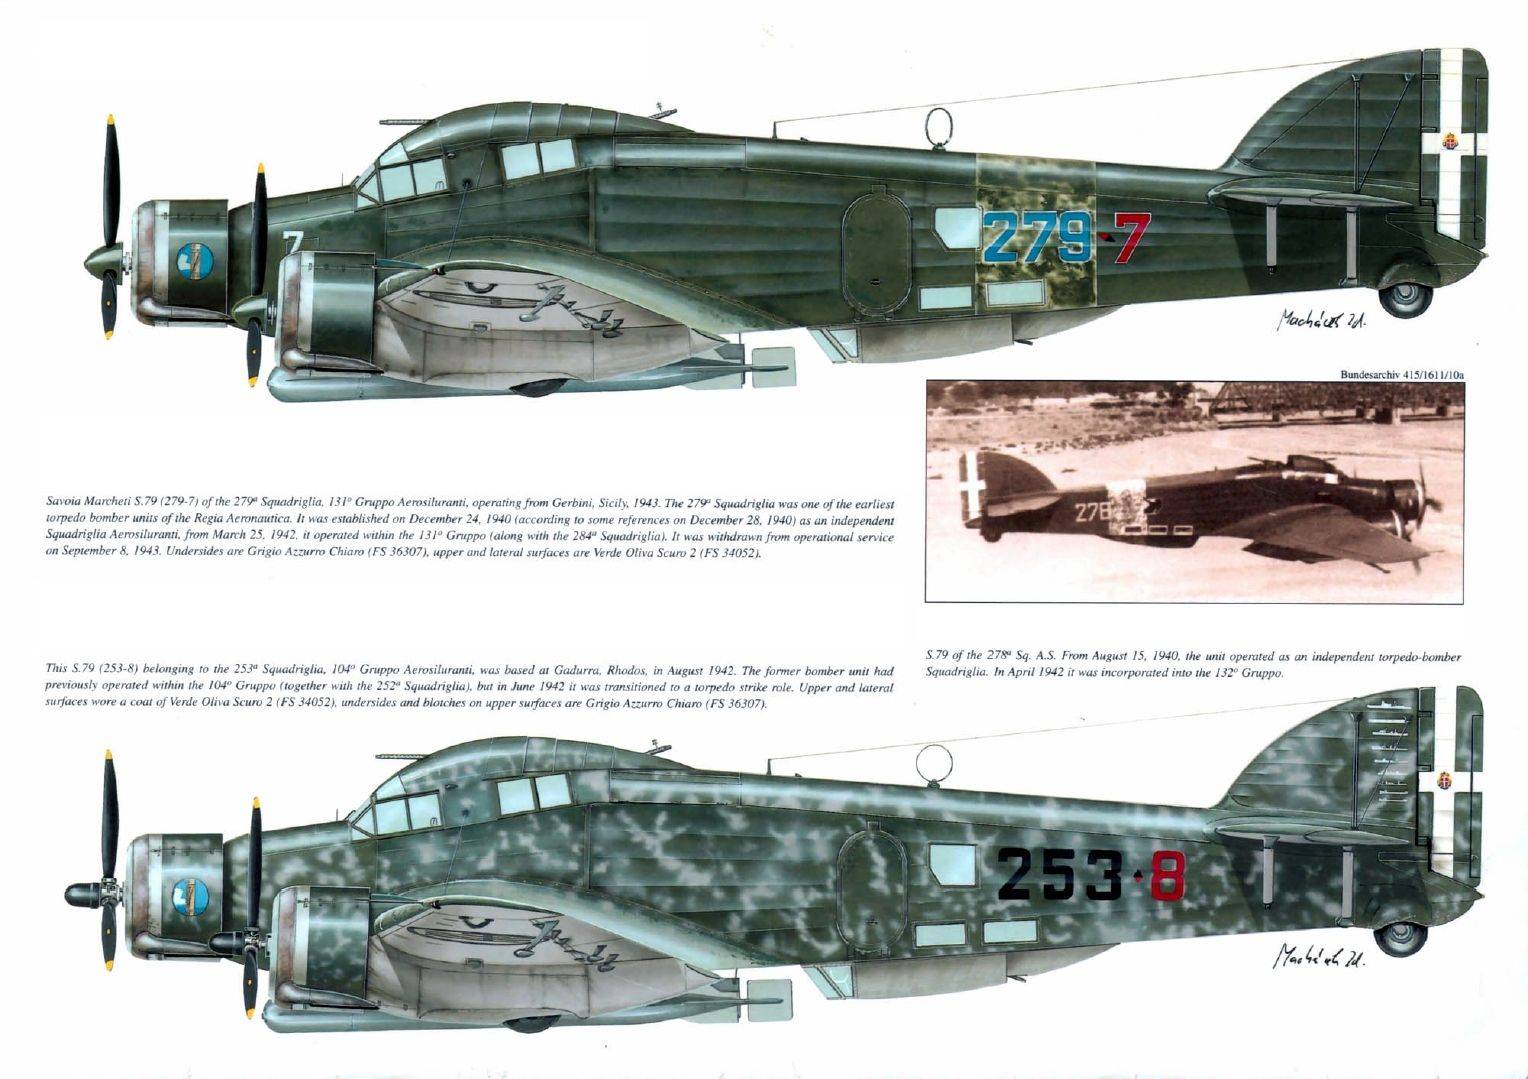 Бомбардировщик савойя-маркетти sm.79 «спарвиеро»